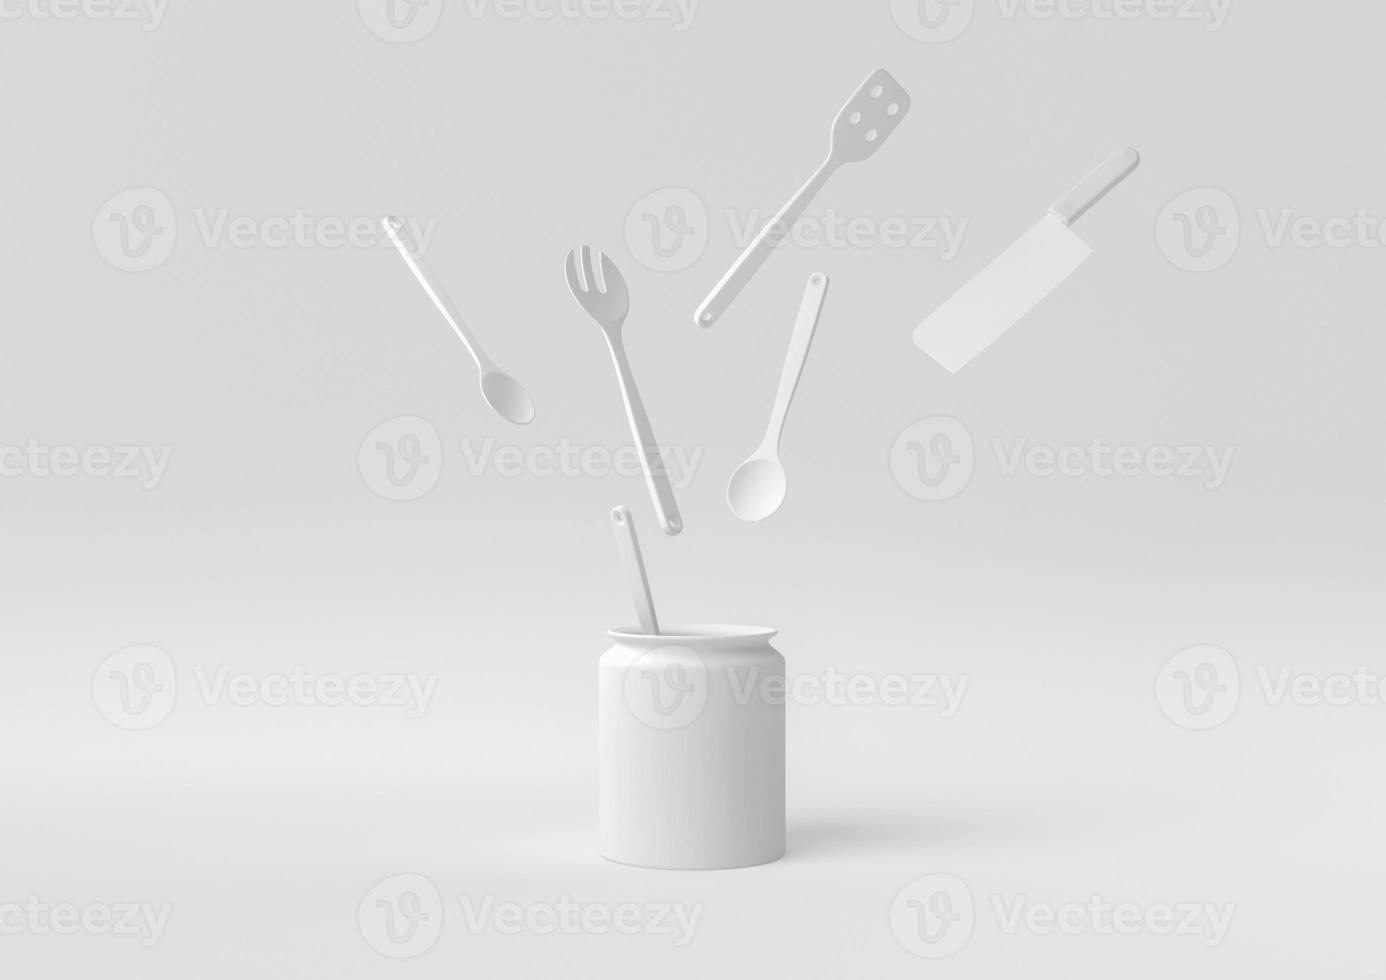 utensílios de cozinha brancos e ingredientes de panificação flutuando no fundo branco. ideia de conceito mínimo criativa. monocromático. renderização 3D. foto